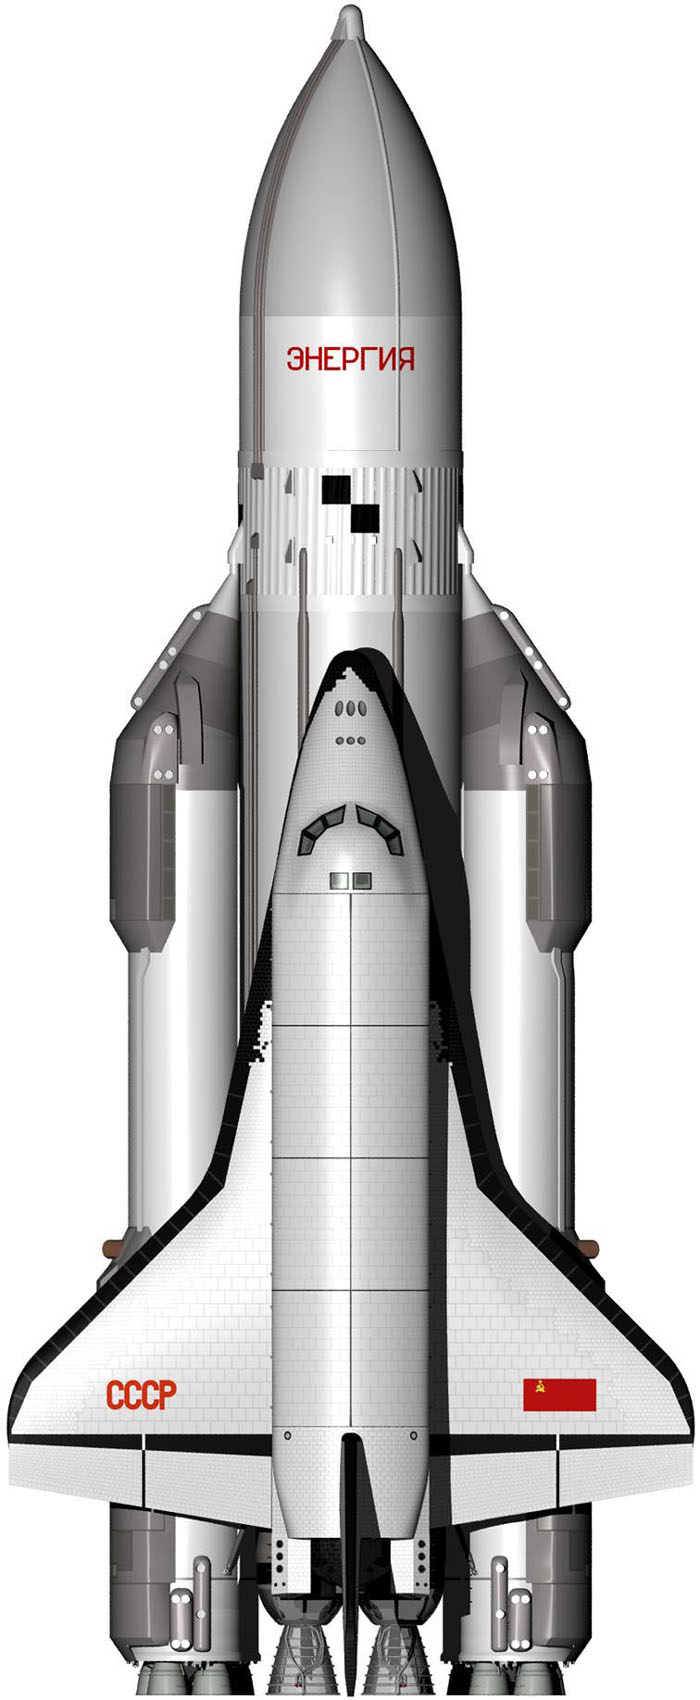 O space shuttle russo Buran 1.01 com um lançador Energya